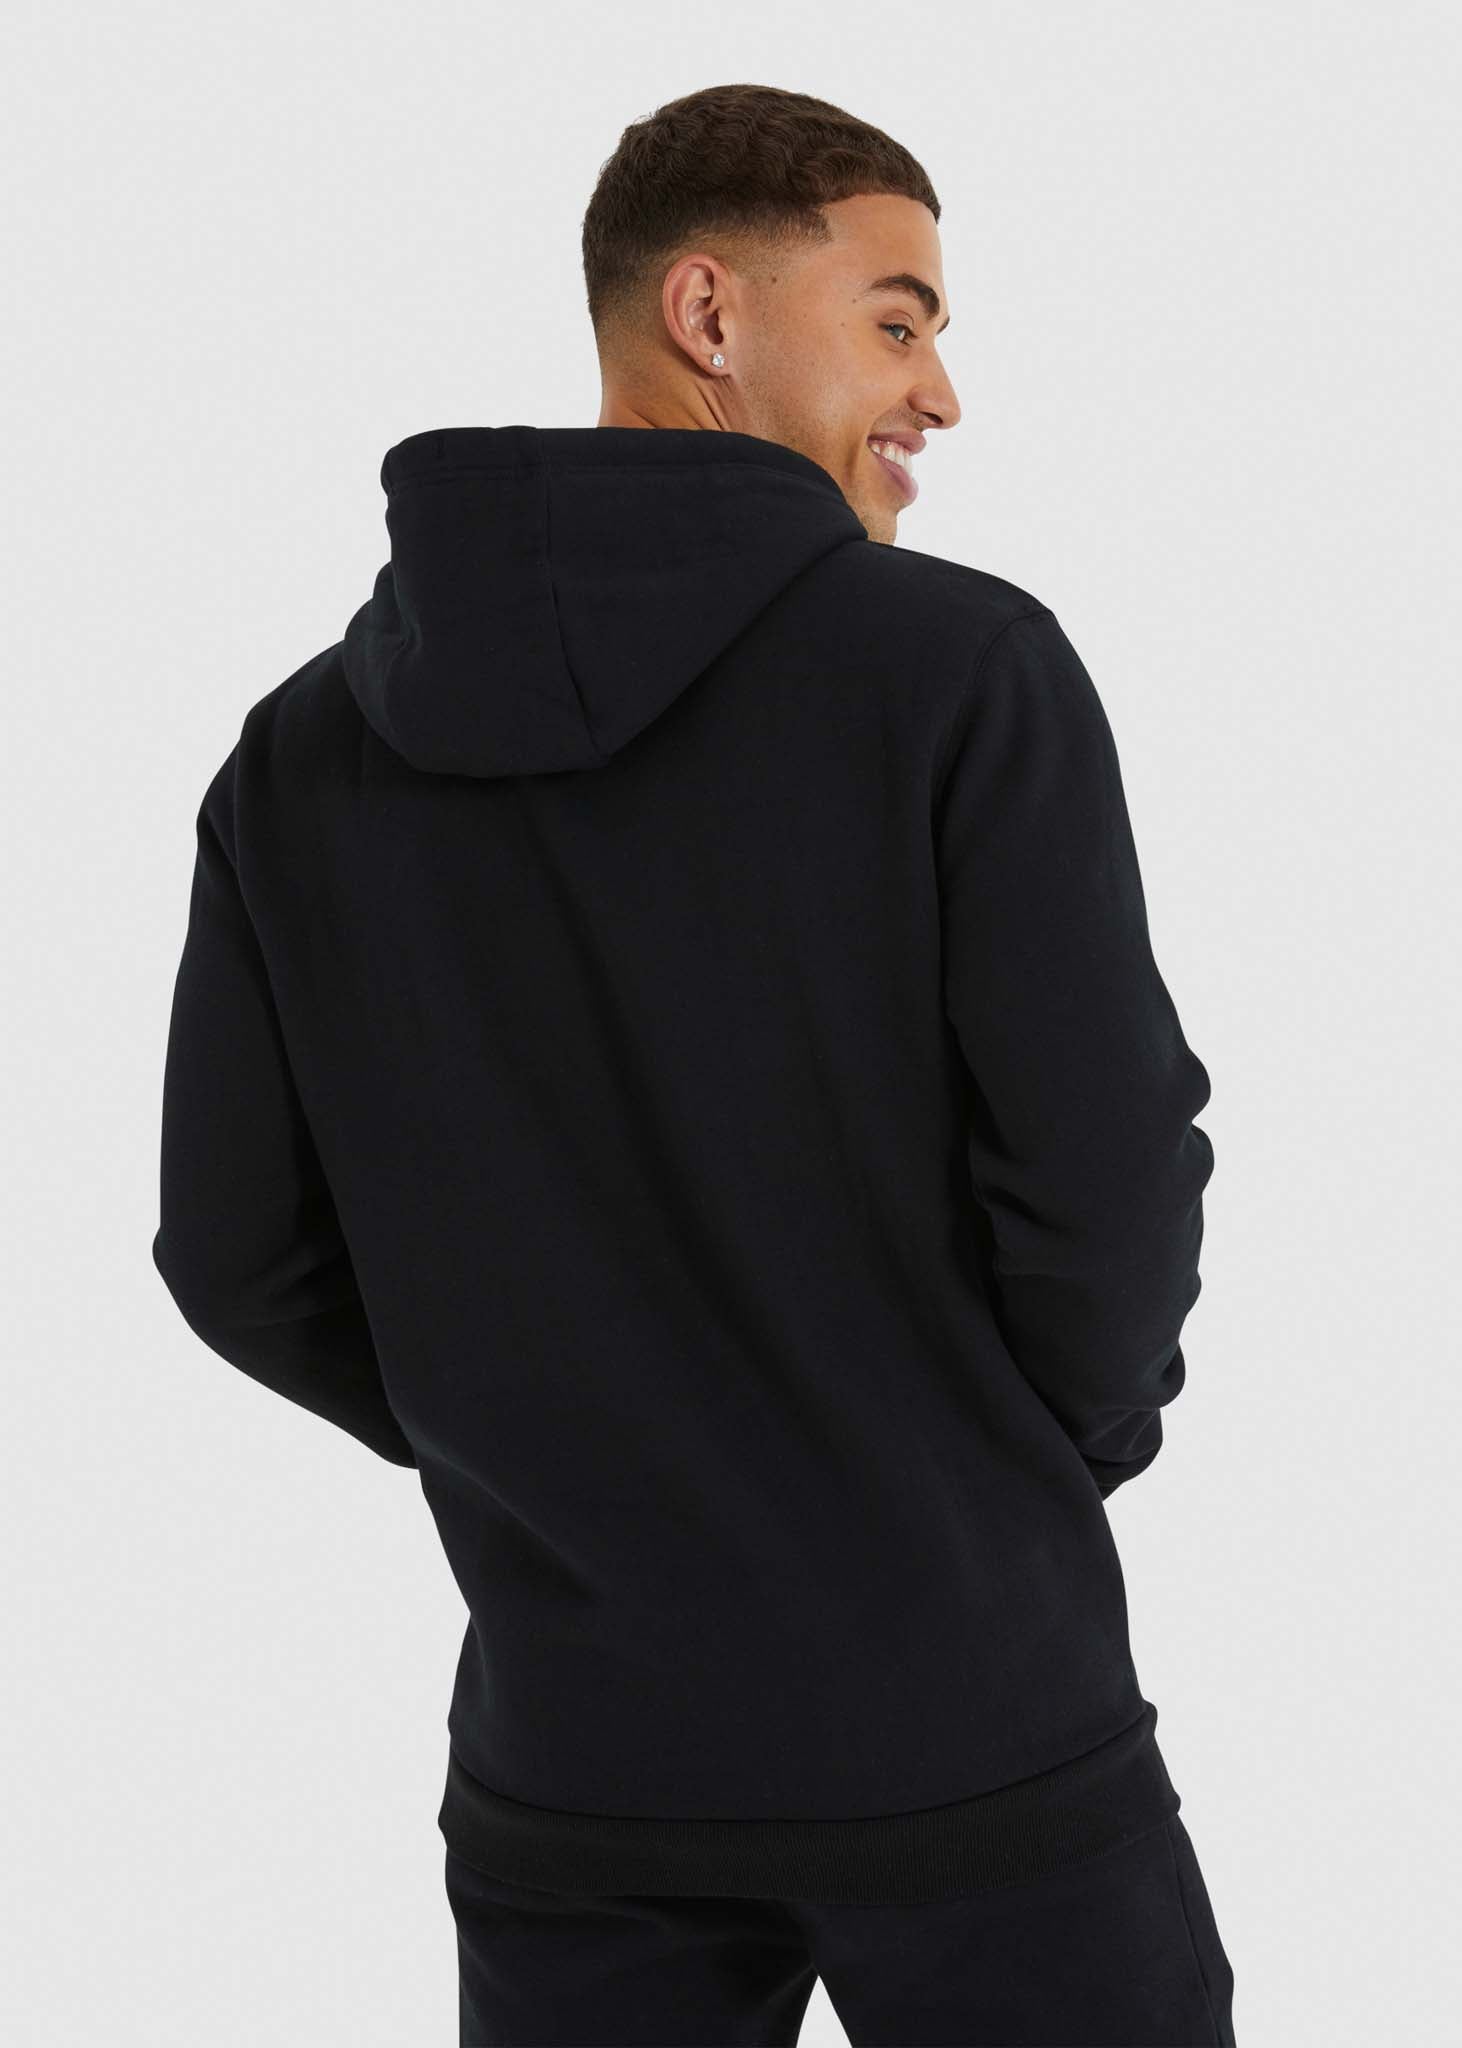 Ellesse hoodie black with print